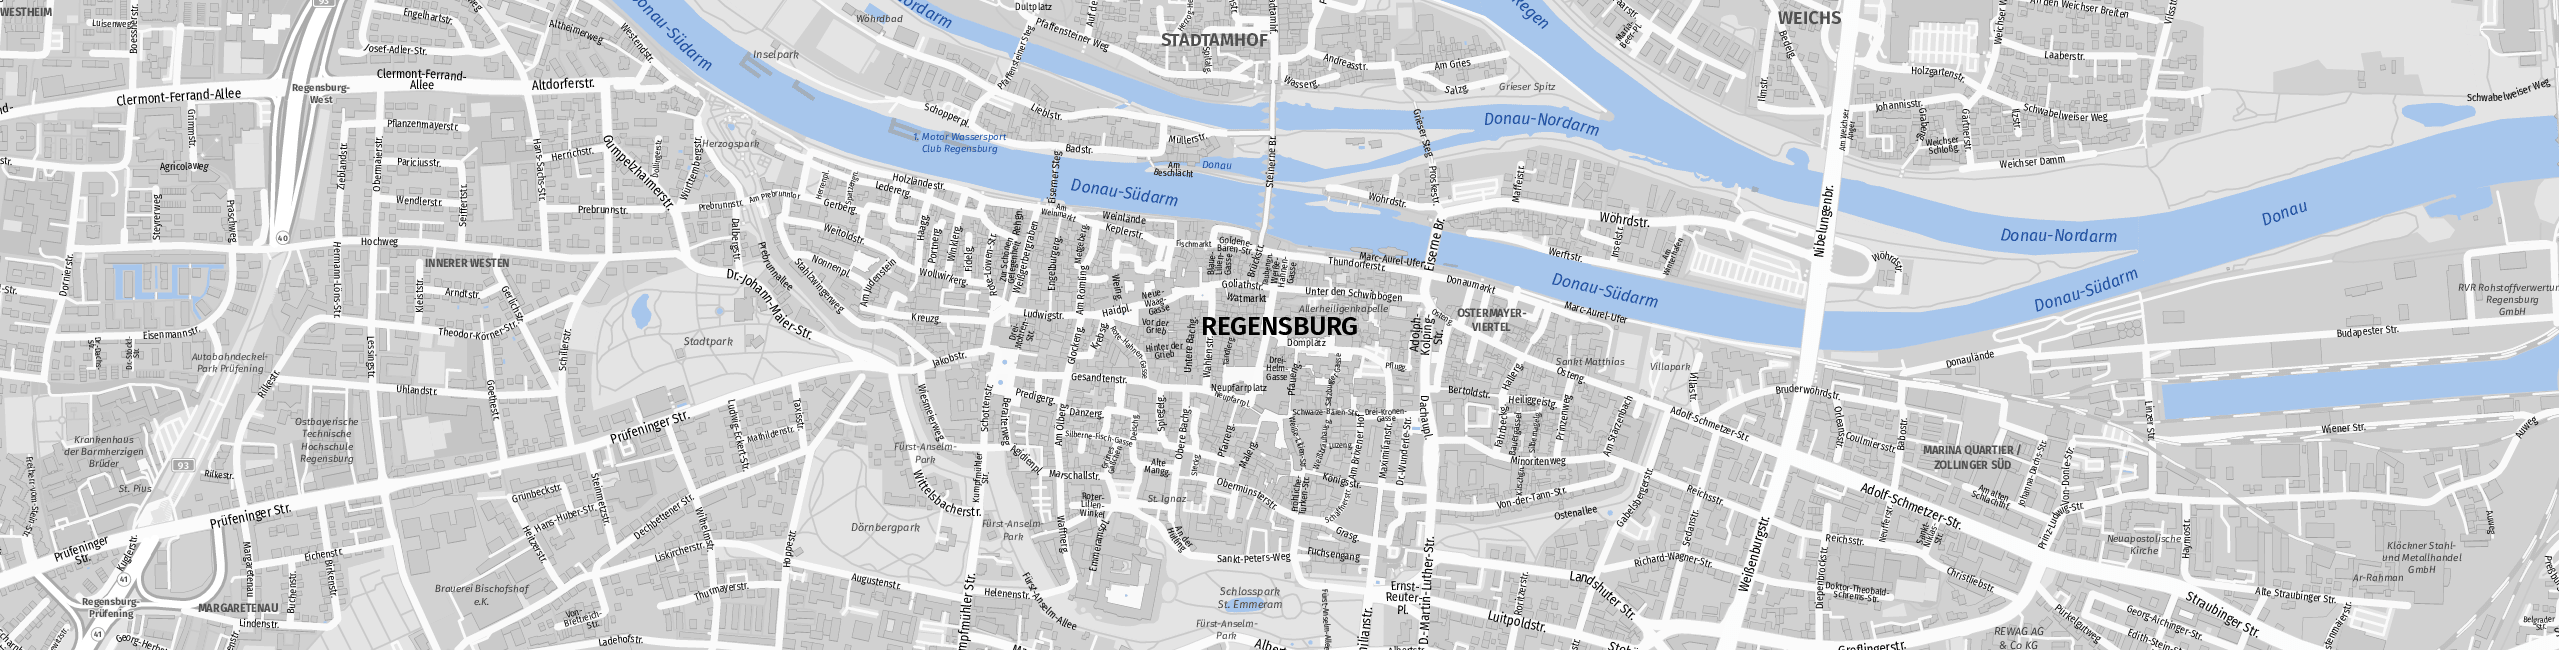 Stadtplan Regensburg zum Downloaden.